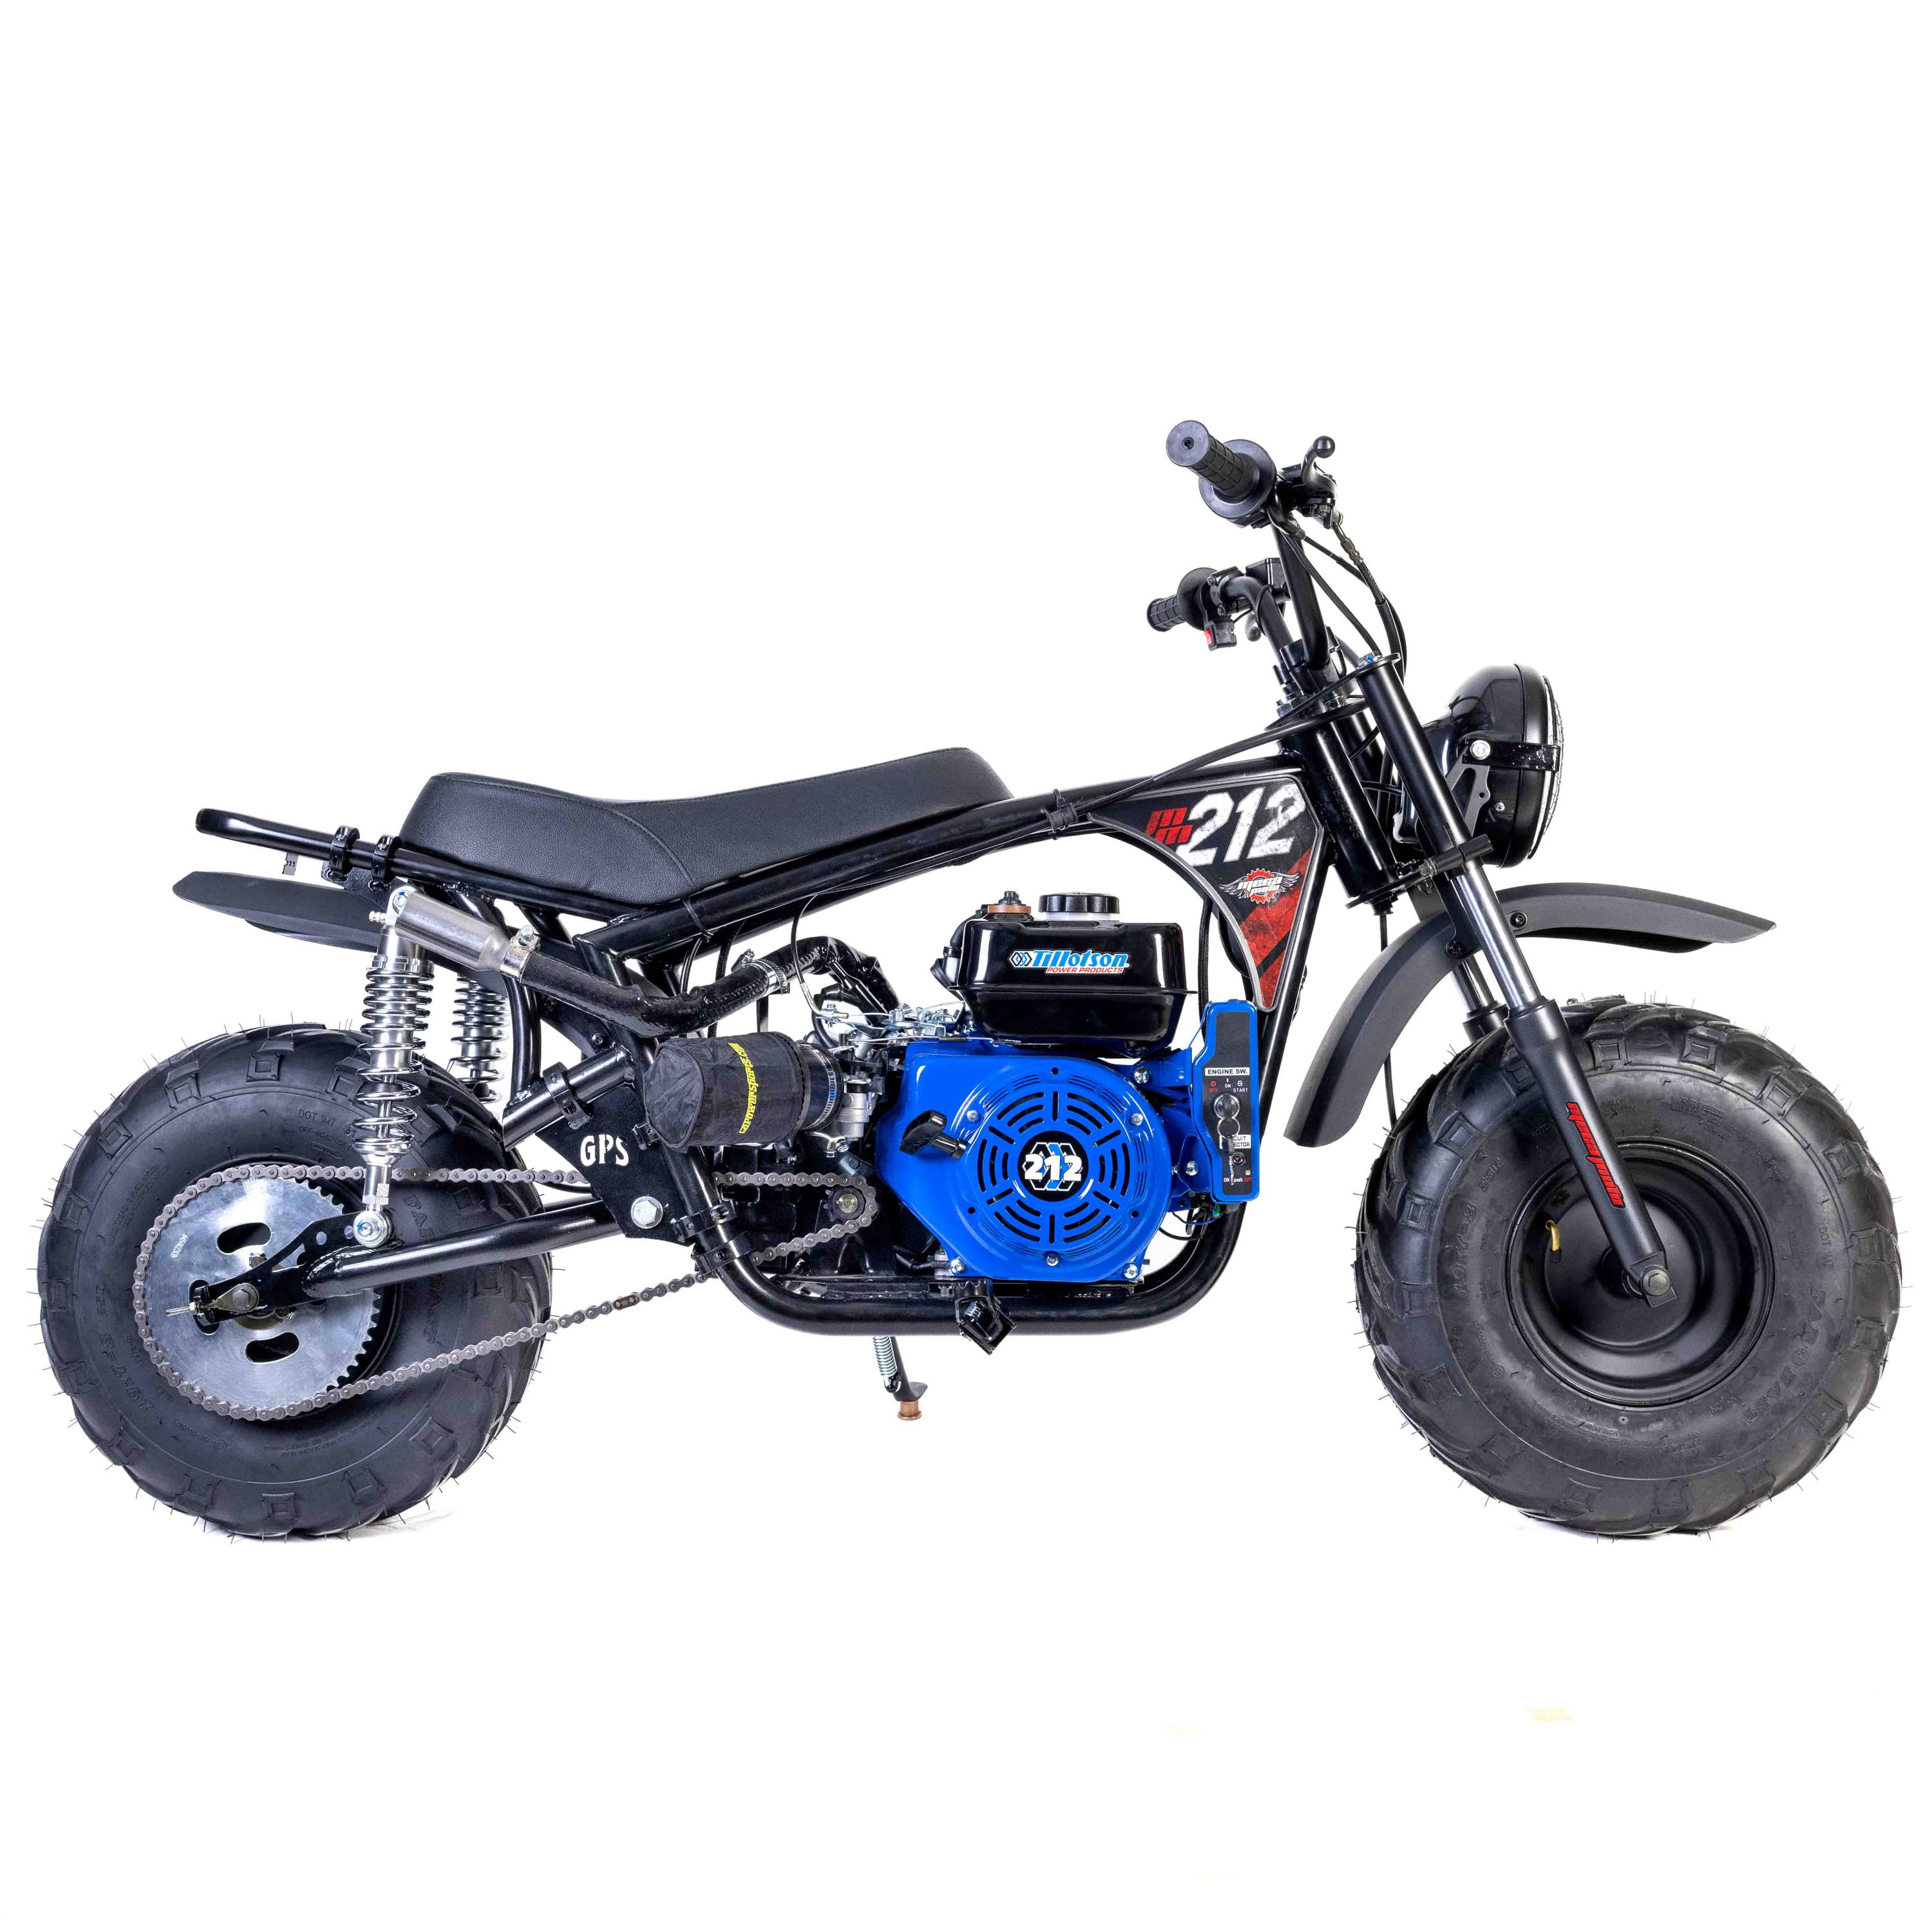 Megalodon Mega Moto 212 Minibike Kit. Mini Bikes for sale.